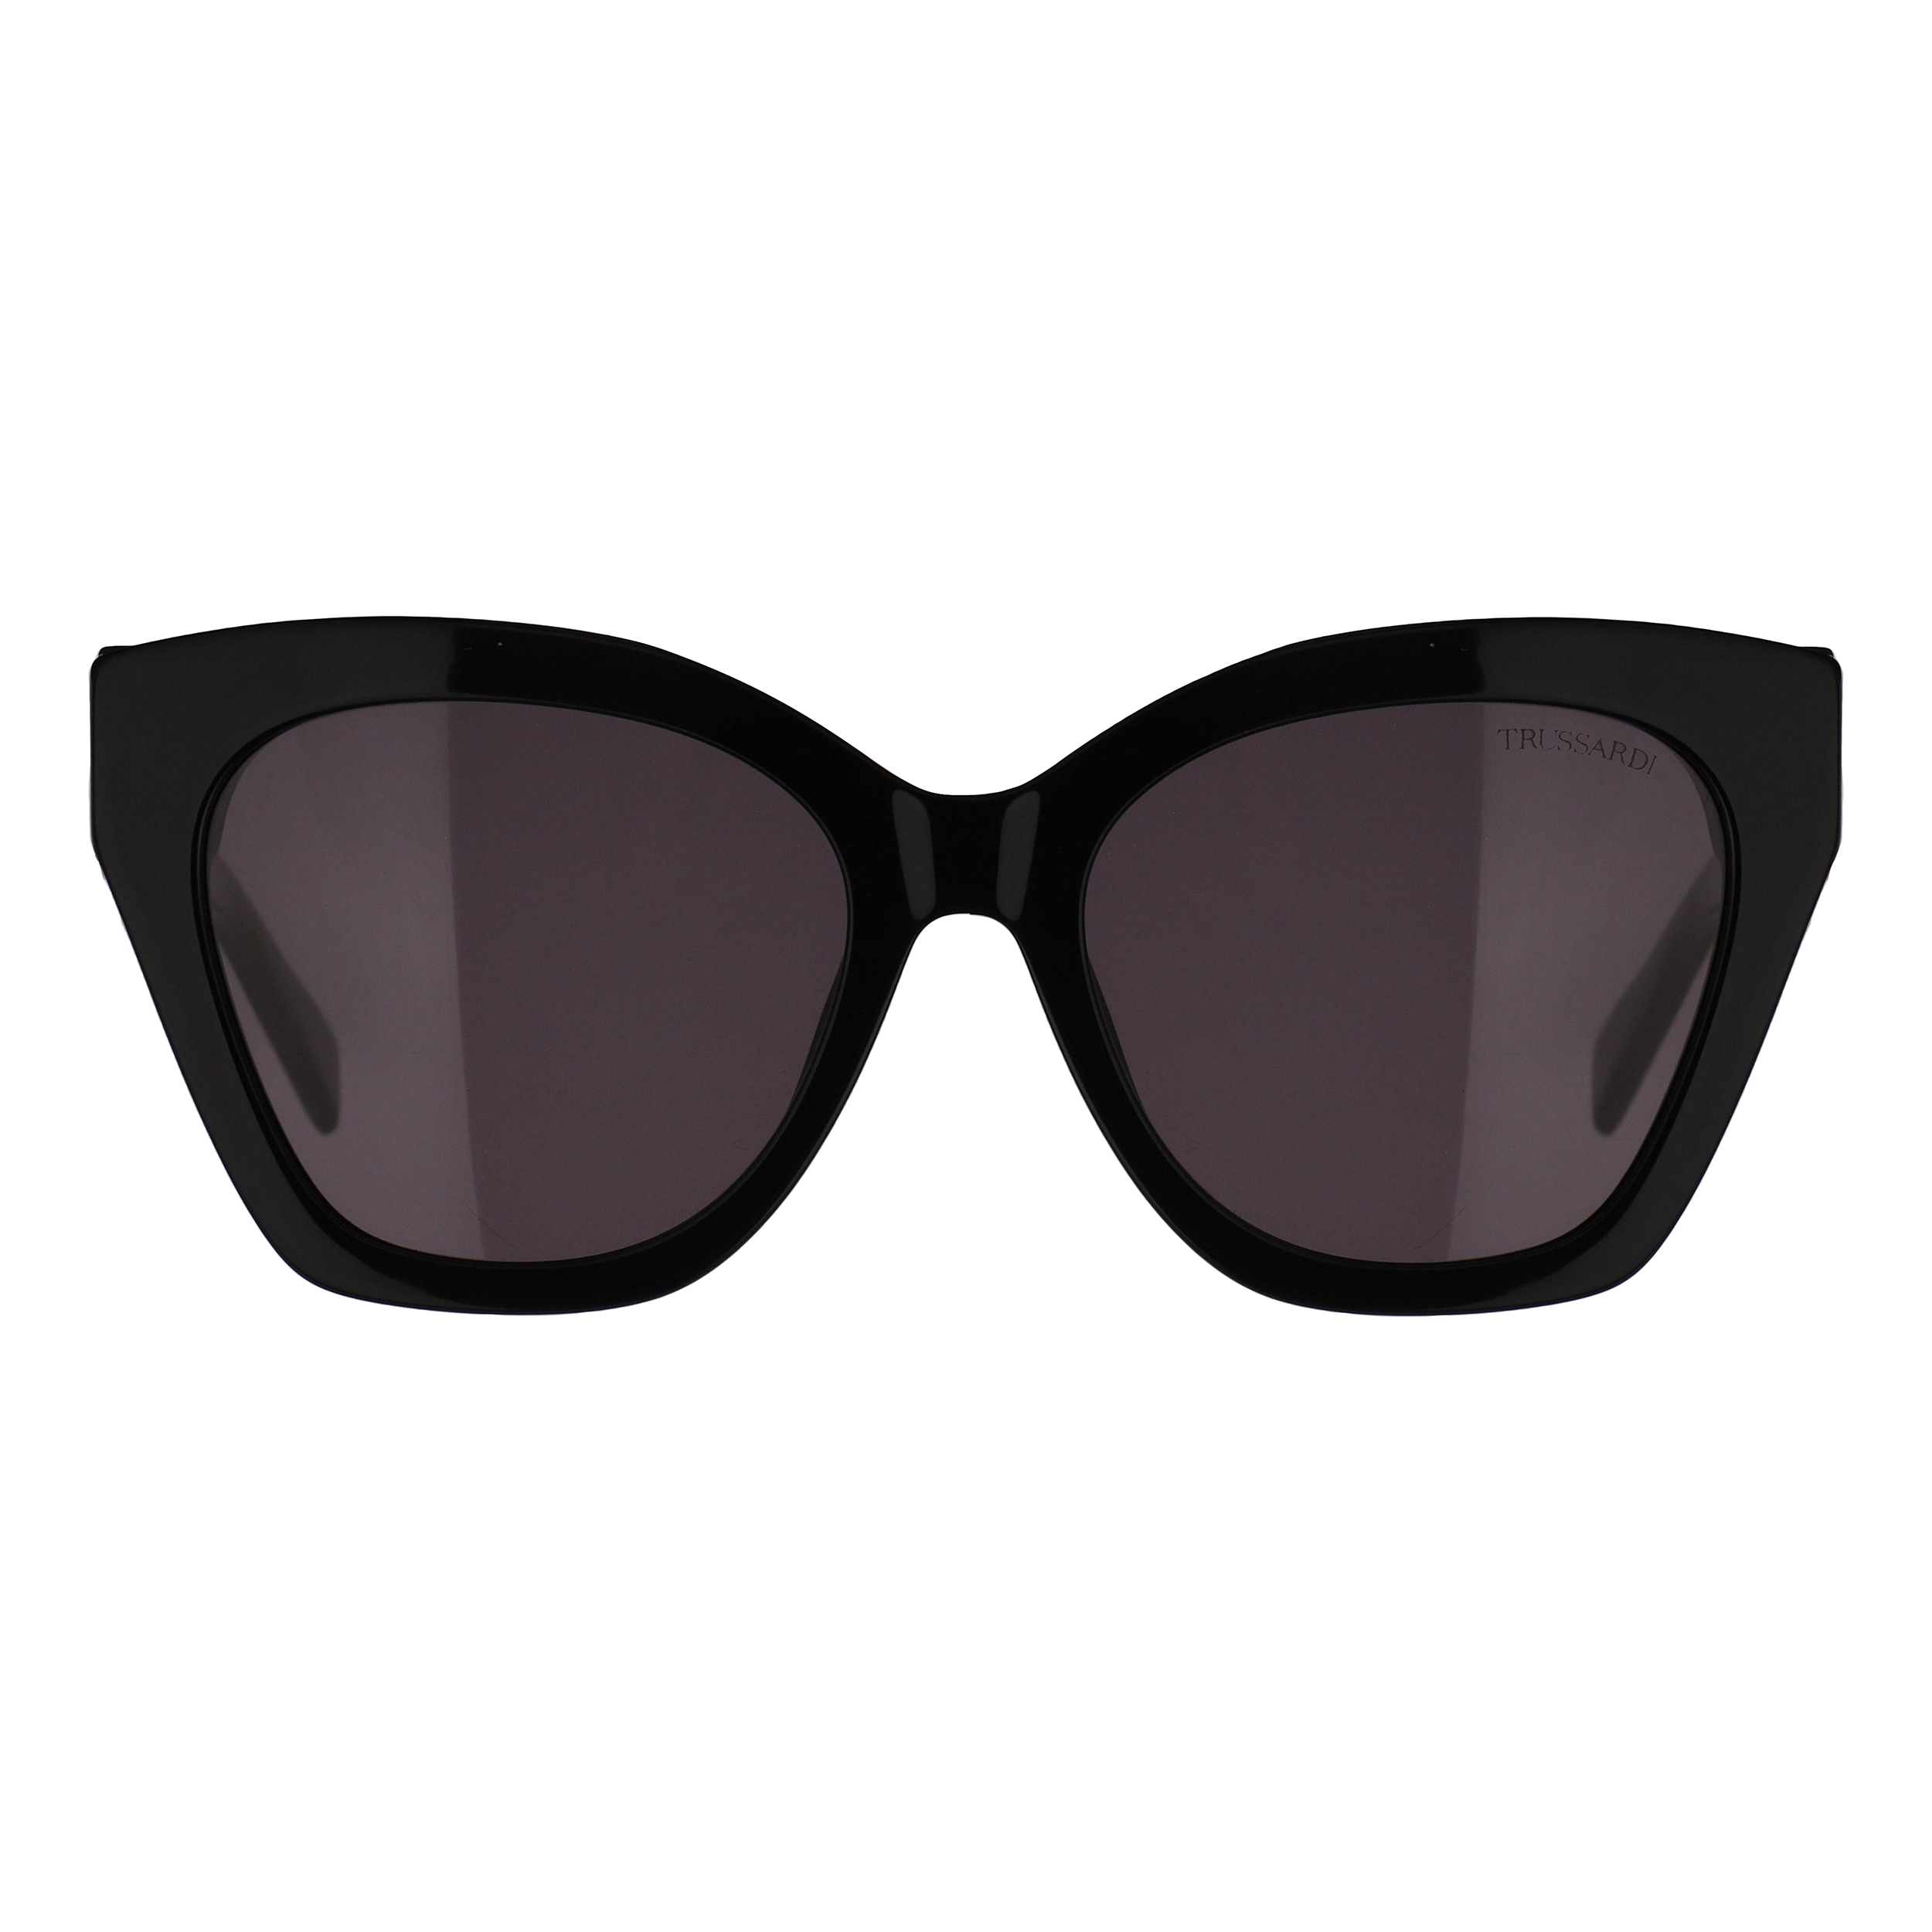 عینک آفتابی زنانه تروساردی مدل STR580-700